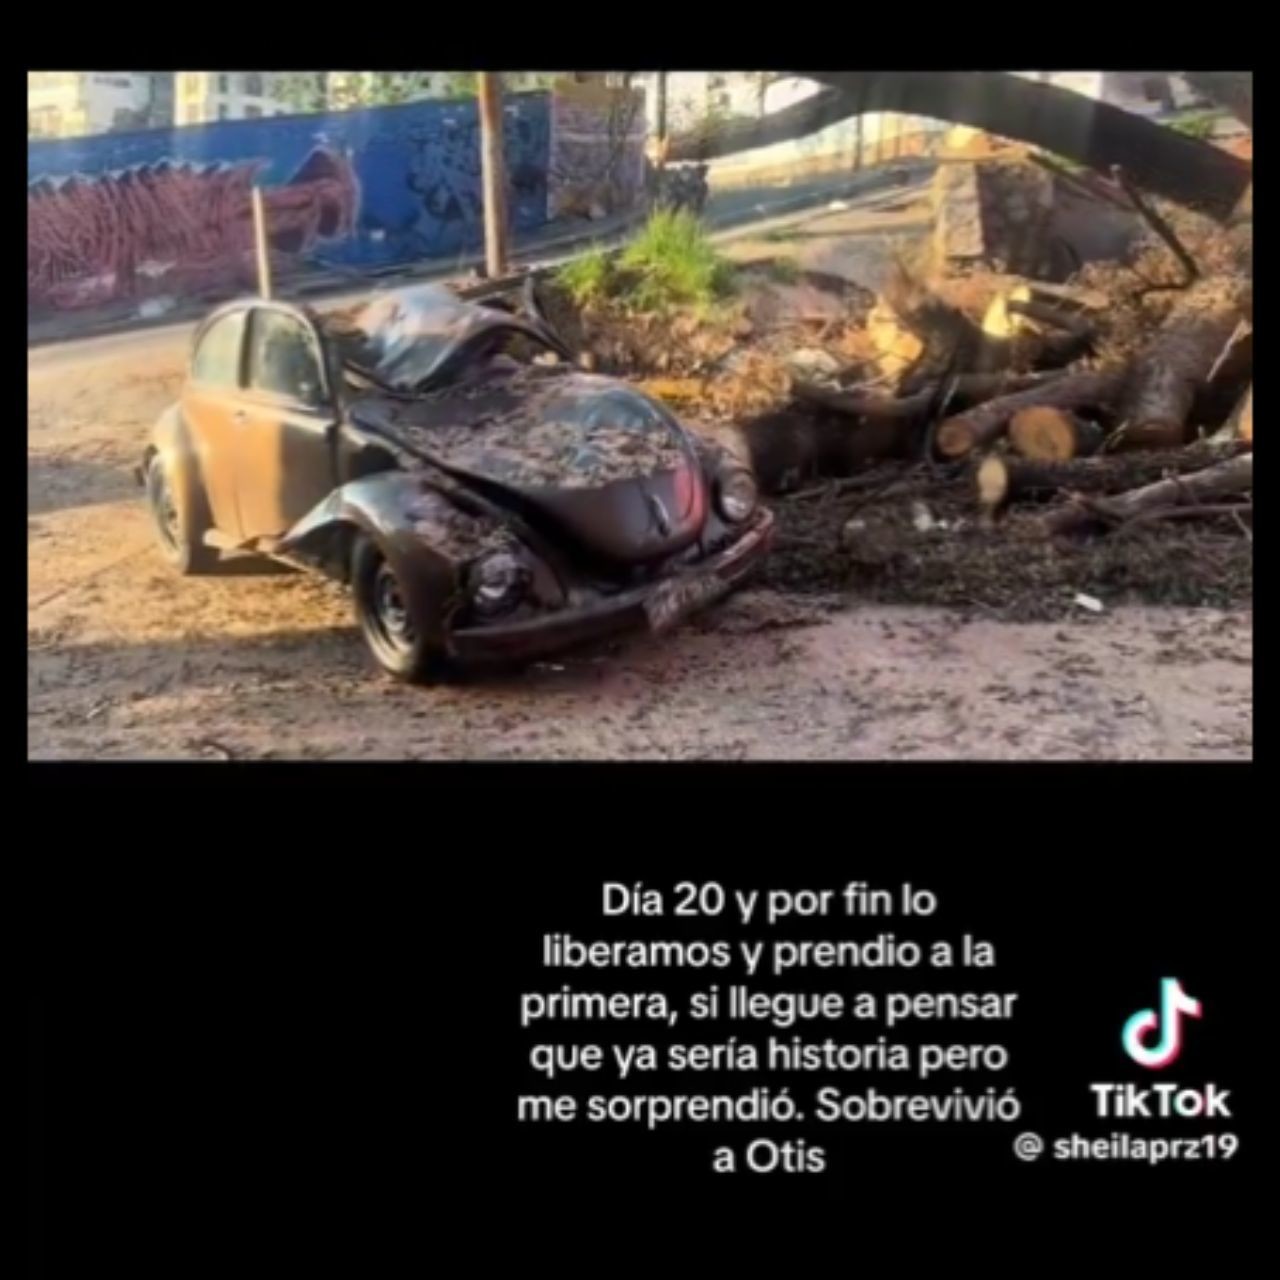 VIRAL: Vocho resiste impacto de Otis y enciende tras caerle una Ceiba encima Foto:@sheilaprz19